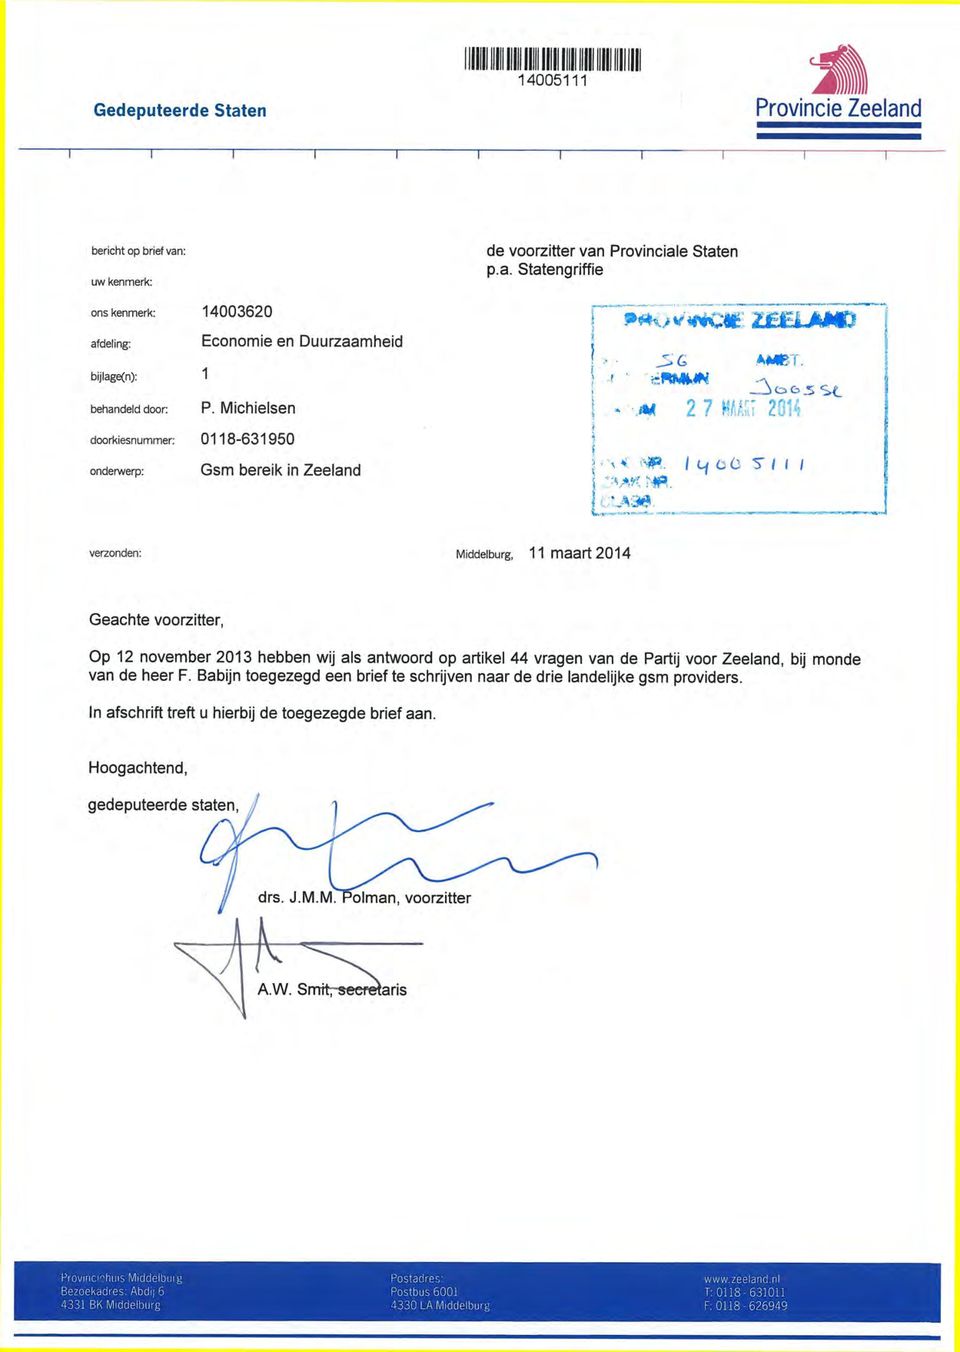 m 2 7 MAÂRĩ 2014 verzonden: Middelburg, 11 maart 2014 Geachte voorzitter, Op 12 november 2013 hebben wij als antwoord op artikel 44 vragen van de Partij voor Zeeland, bij monde van de heer F.